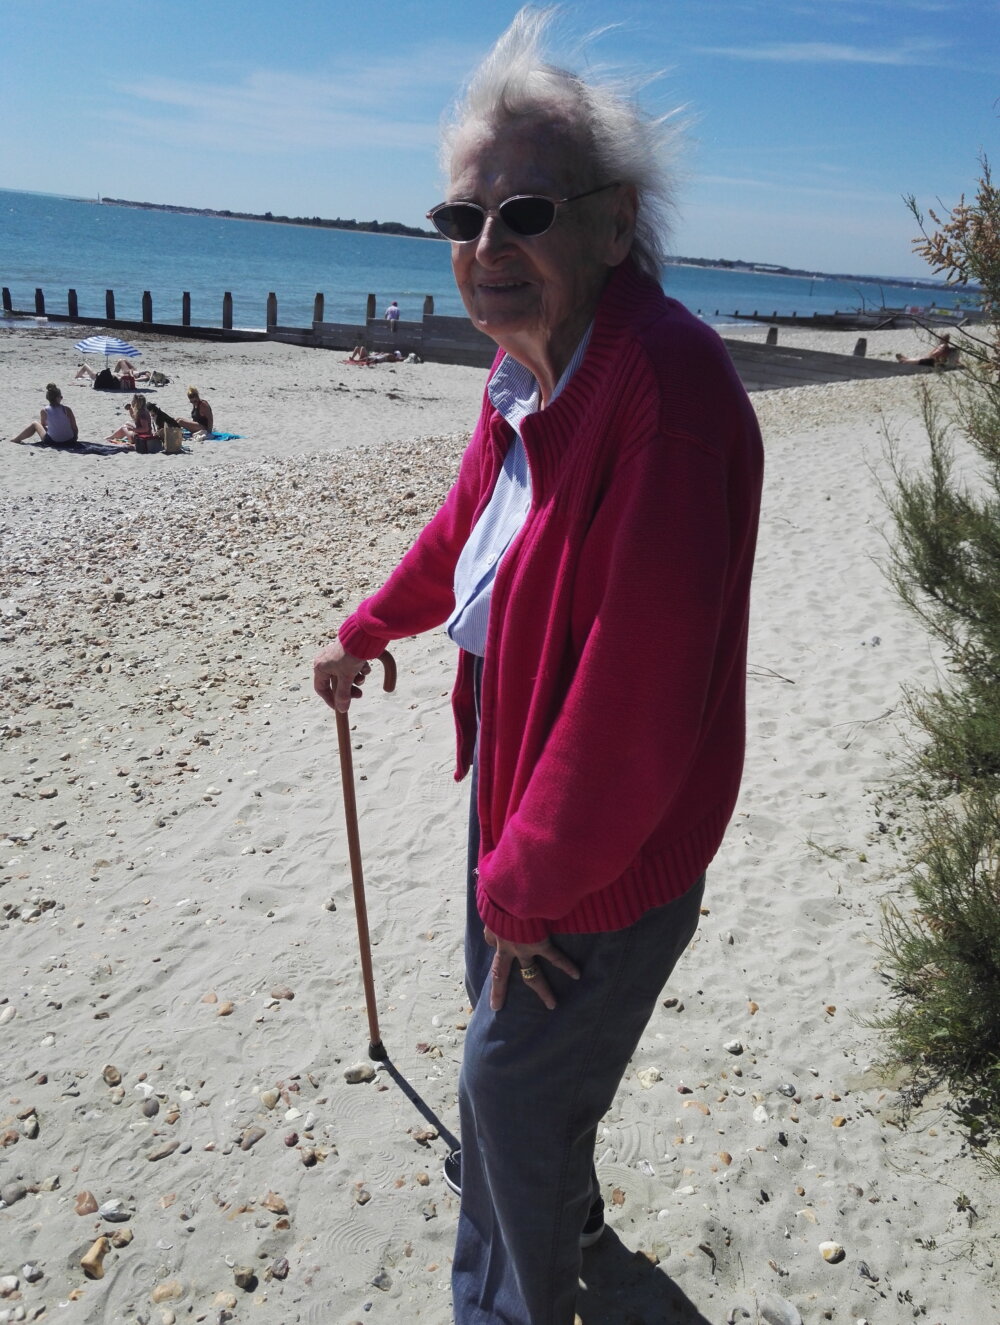 Sheila enjoying the beach